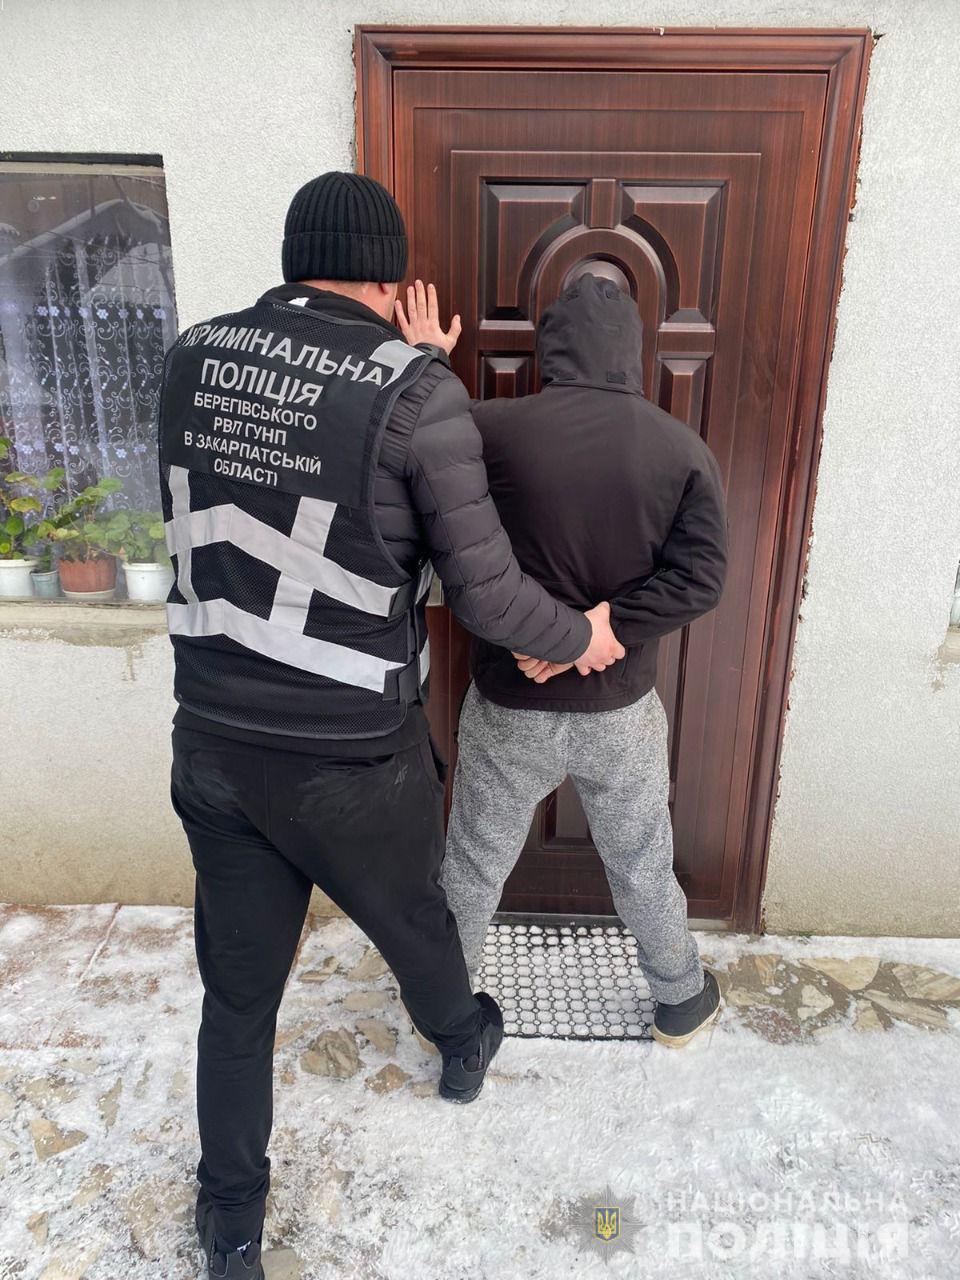 Під час обшуку в оселі мешканця Берегівщини знайшли марихуану та зброю (ФОТО)